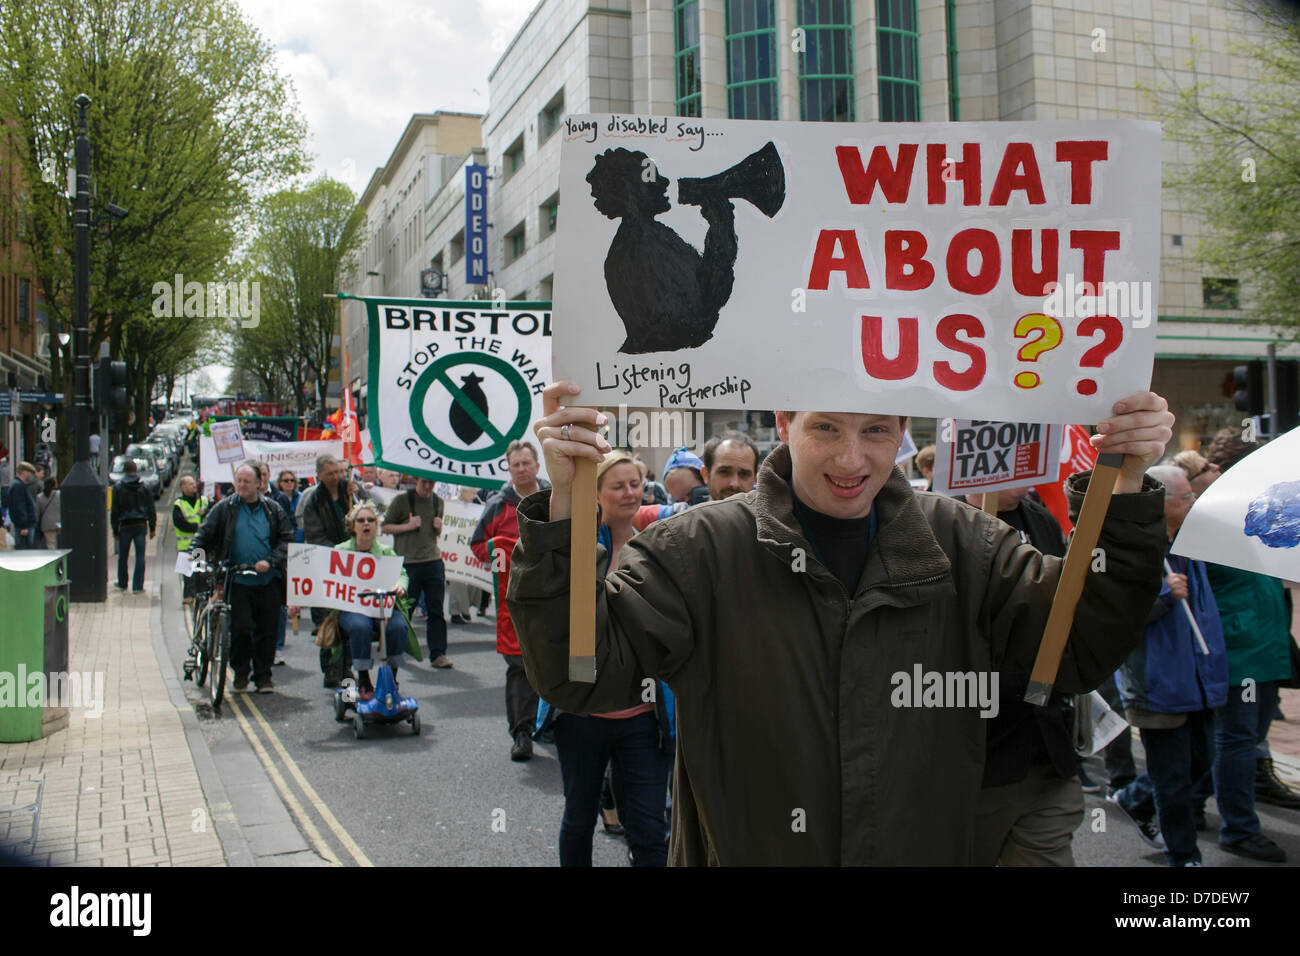 Bristol, Royaume-Uni,Mai 4th,2013. Un manifestant portant une plaque-étiquette est photographié en prenant part à une marche de protestation contre les coupures du gouvernement. Credit : lynchpics / Alamy Live News Banque D'Images